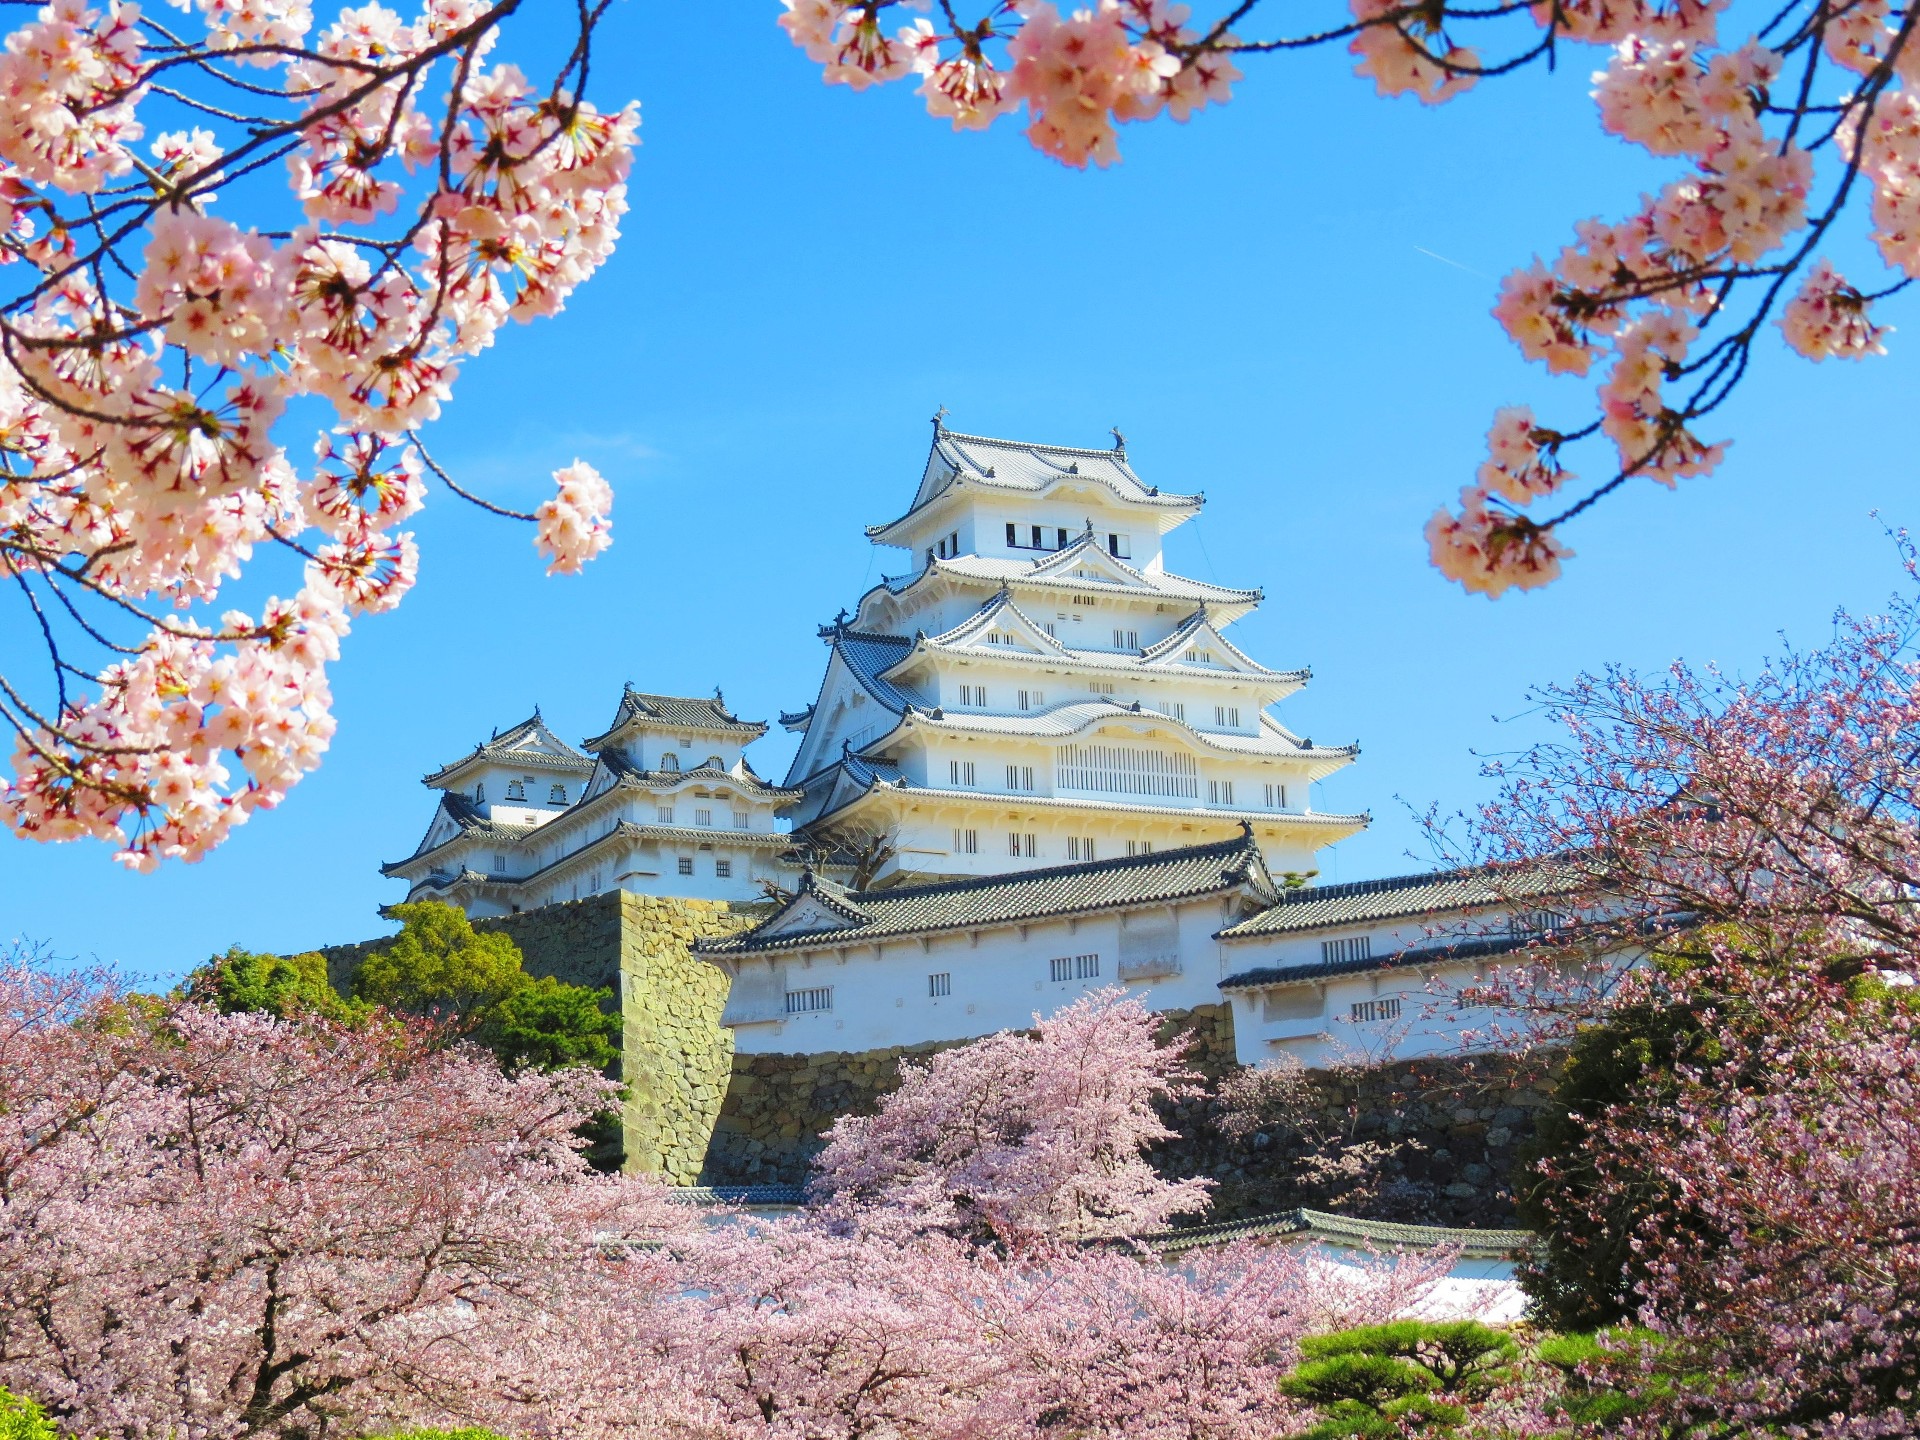 日本の風景 姫路城の桜2 壁紙19x1440 壁紙館